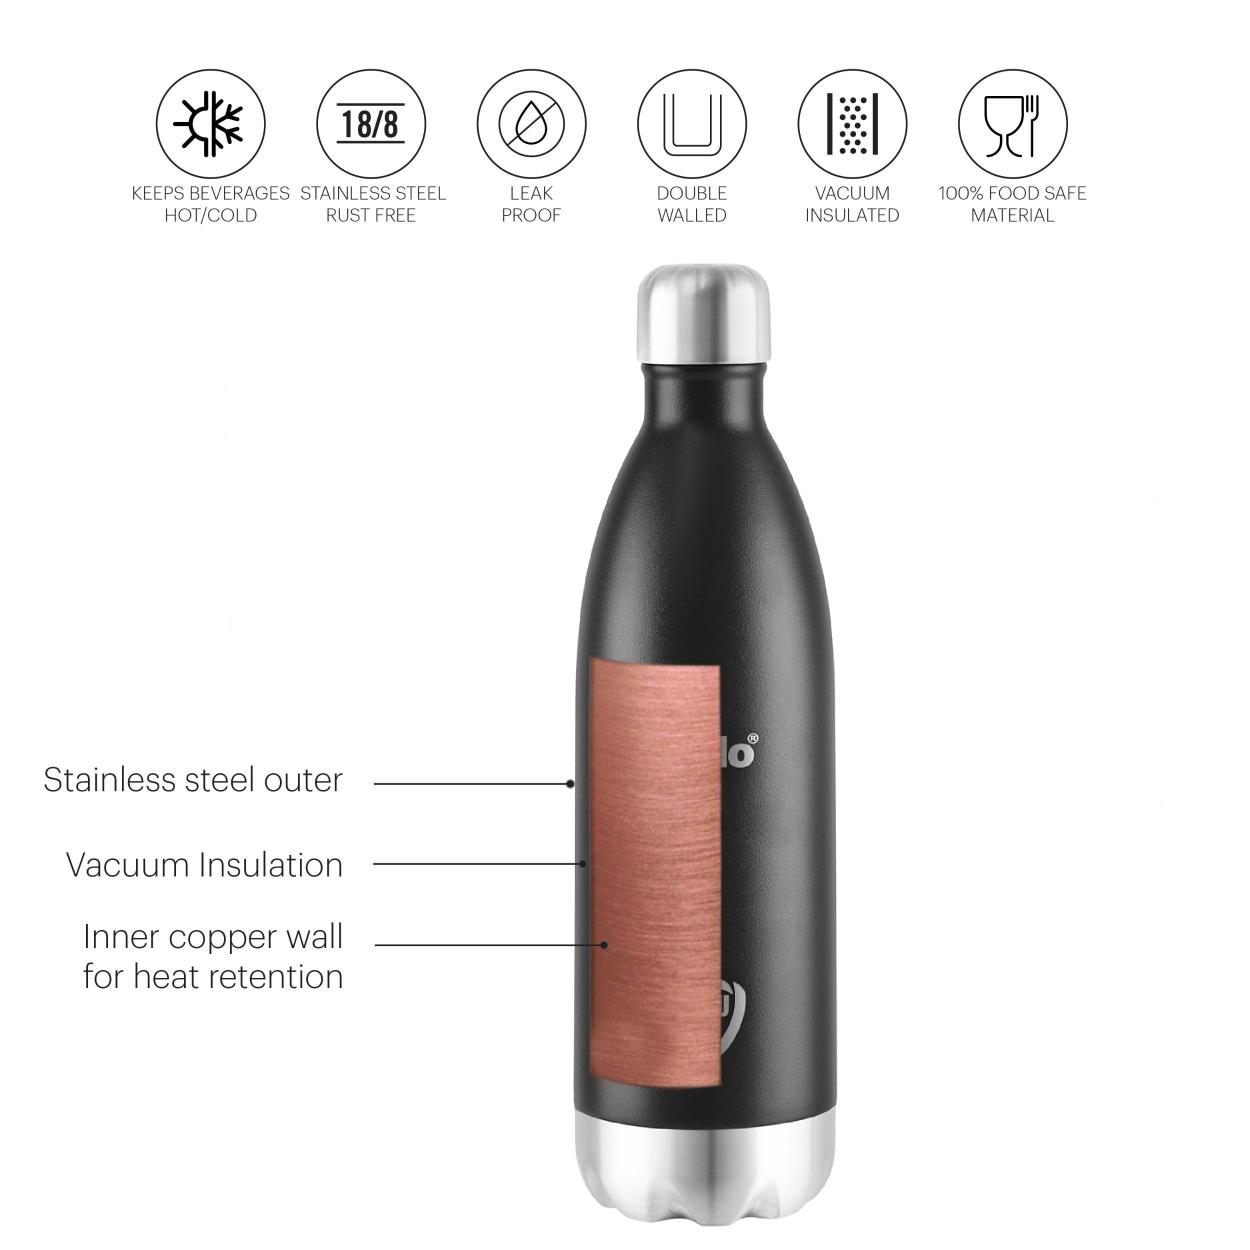 Duro Swift Flask, Vacusteel Water Bottle, 1000ml Black / 1000ml